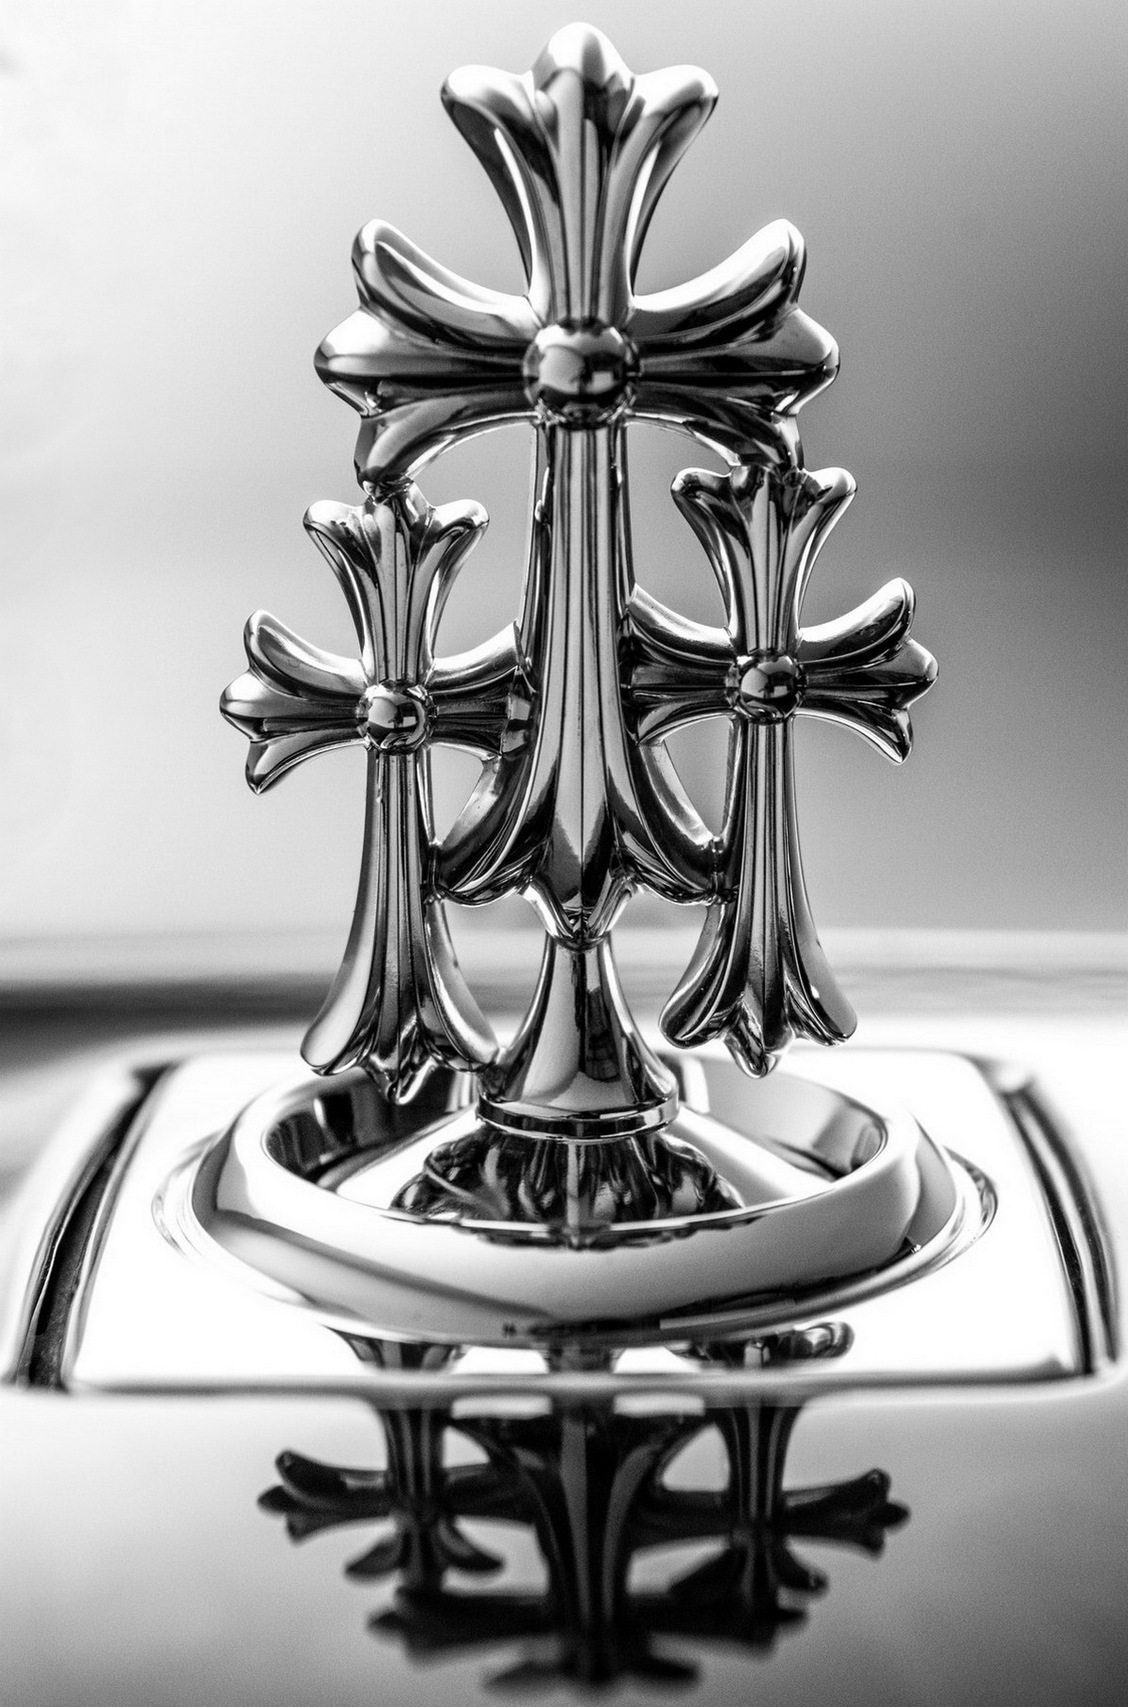 Посмотрите на «готический» Rolls-Royce с нецензурной гравировкой на дисках